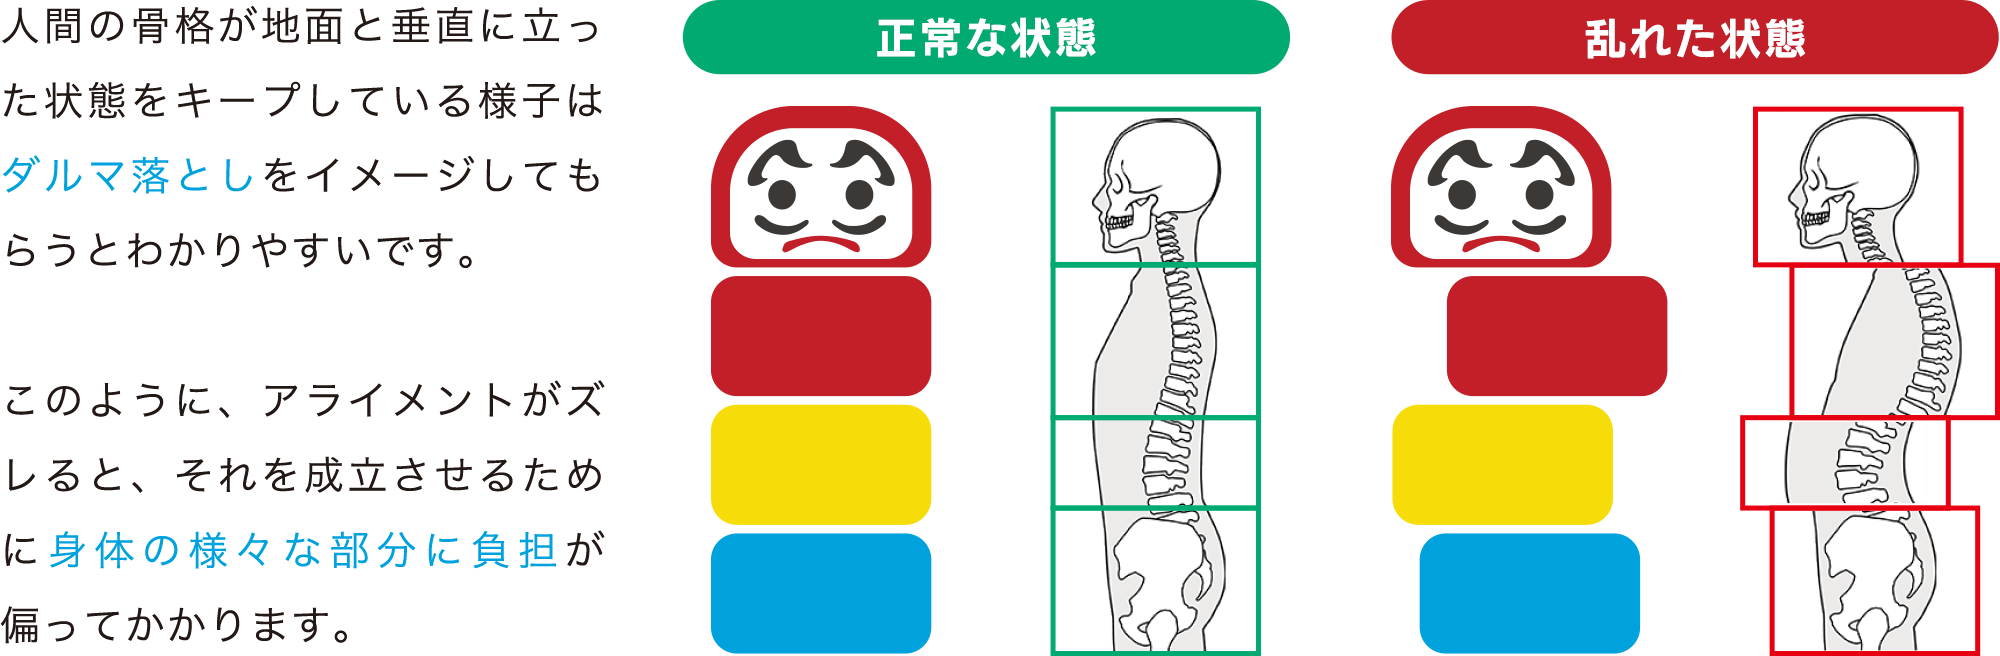 人間の骨格が地面と垂直に立った状態をキープしている様子はダルマ落としをイメージしてもらうとわかりやすいです。このように、アライメントがズレると、それを成立させるために身体の様々な部分に負担が偏ってかかります。